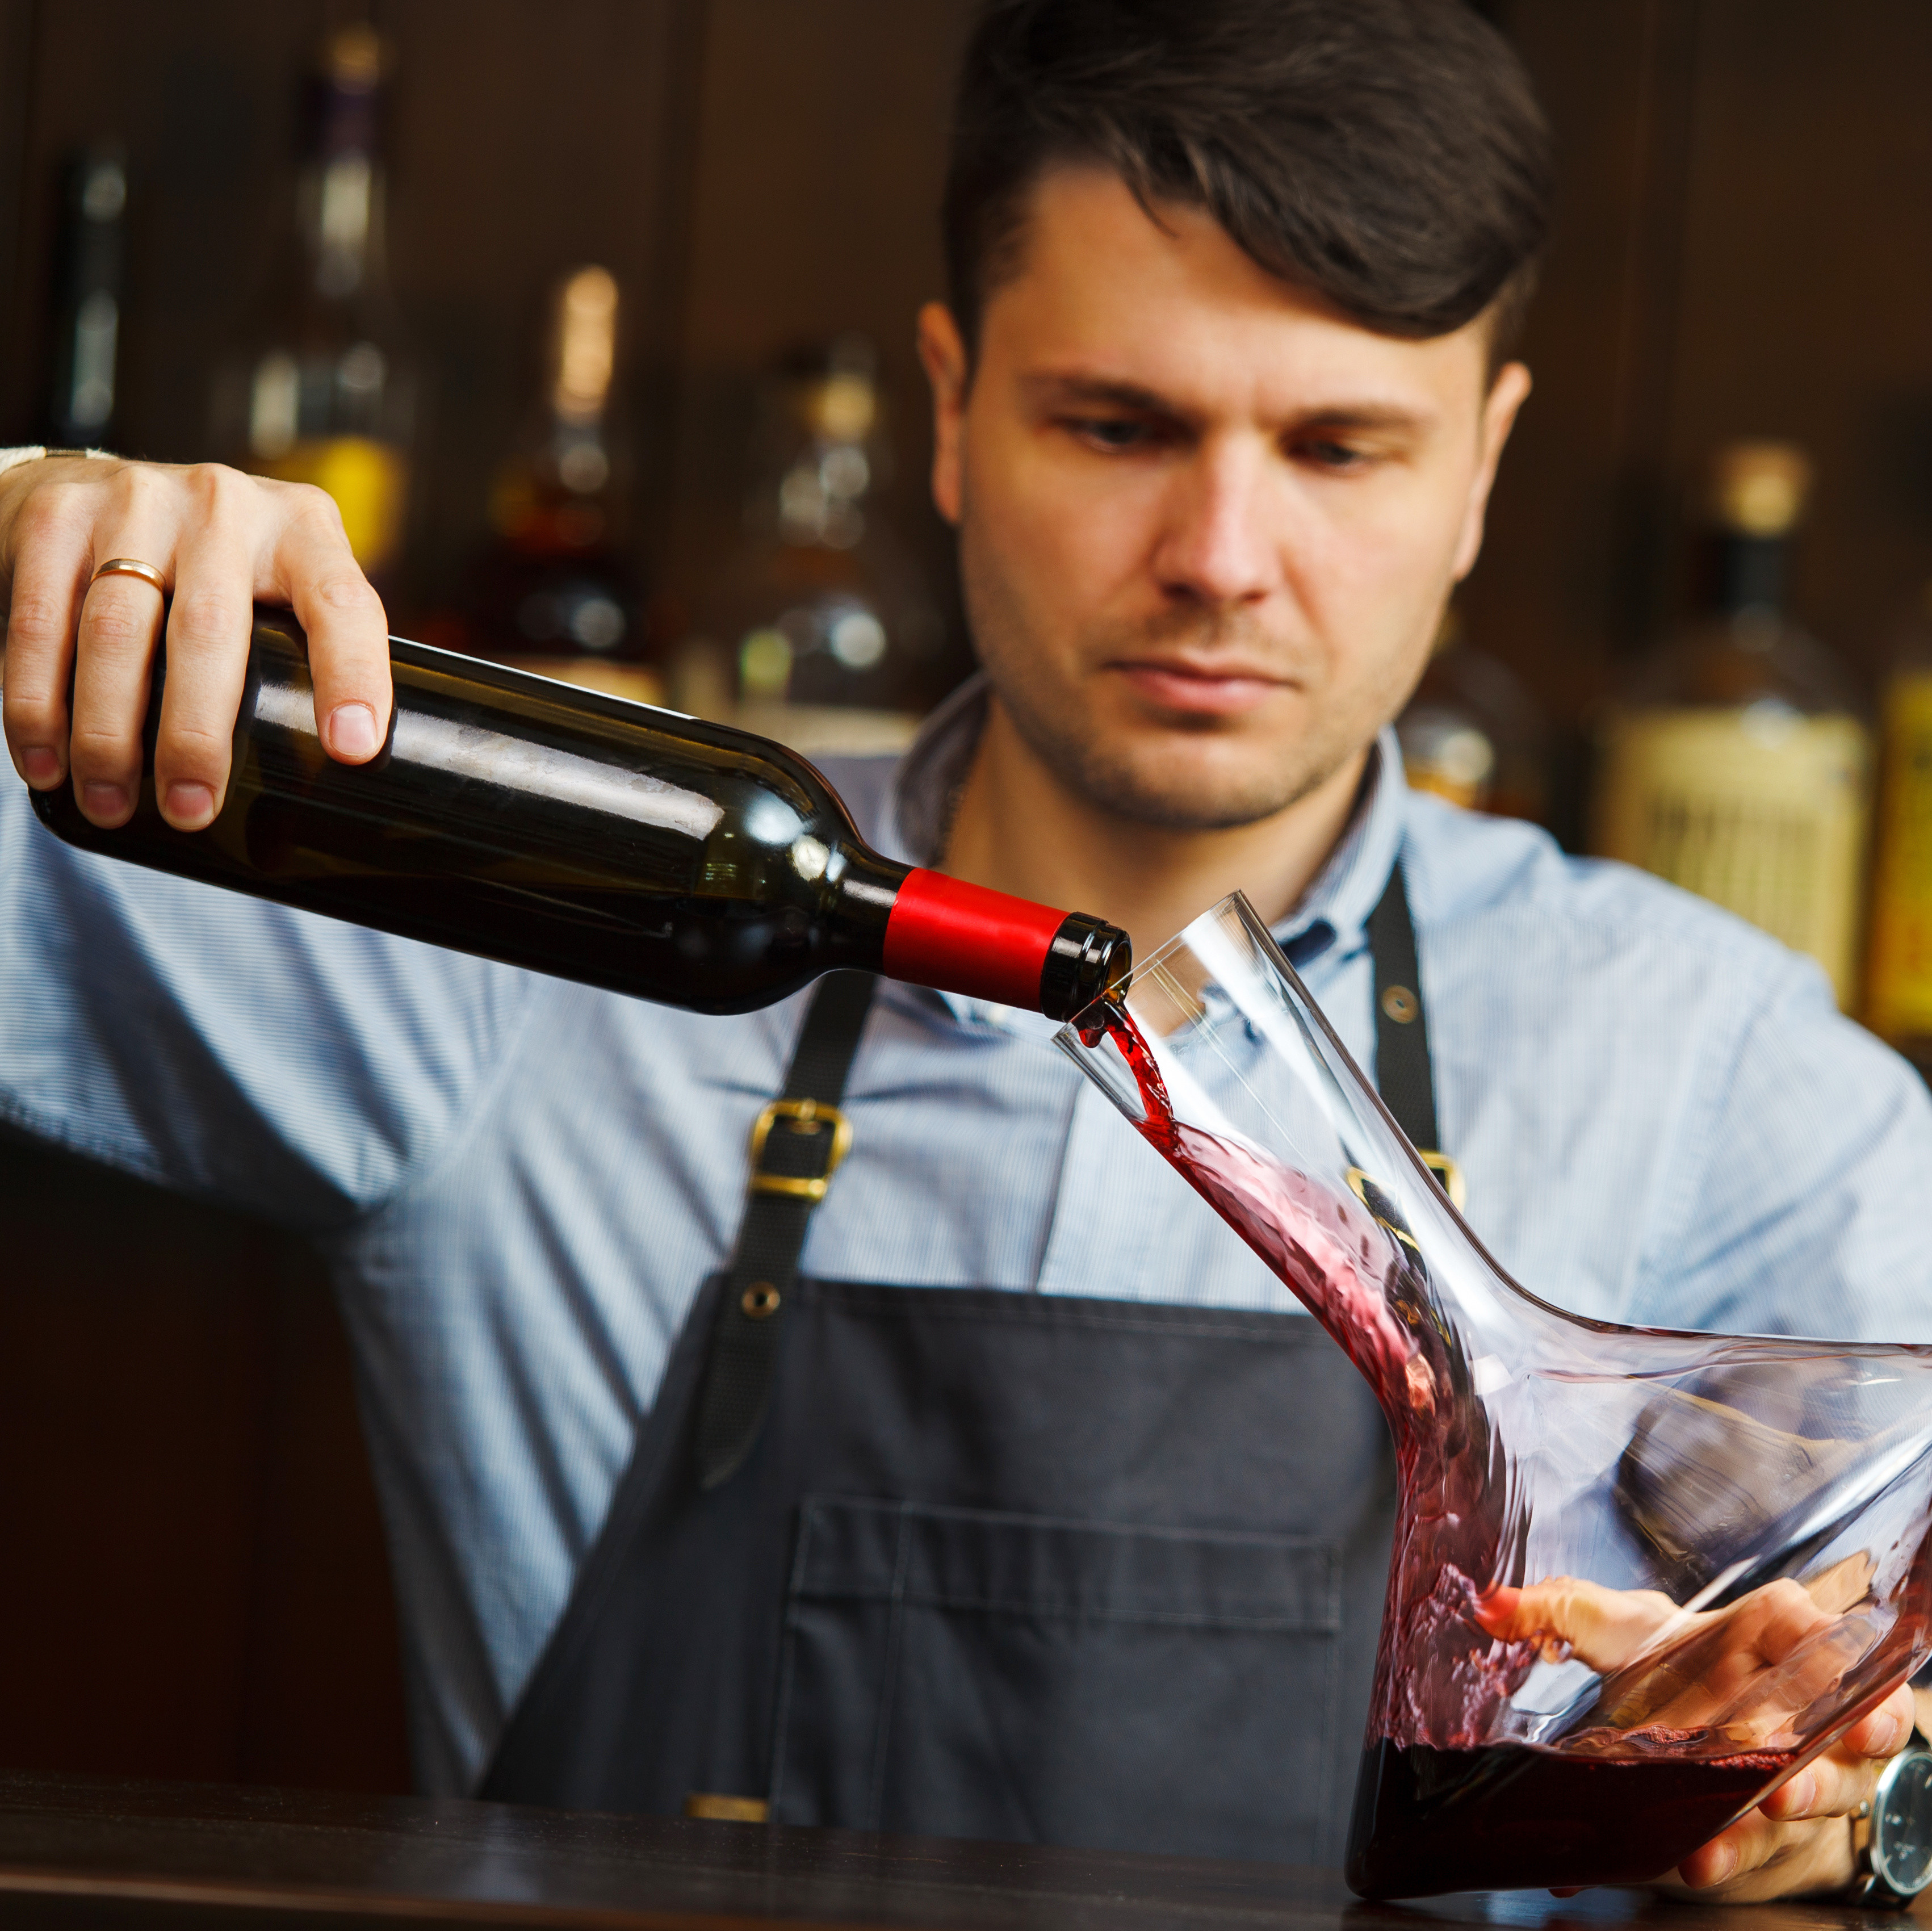 Mann gießt Rotwein in einen Dekanter